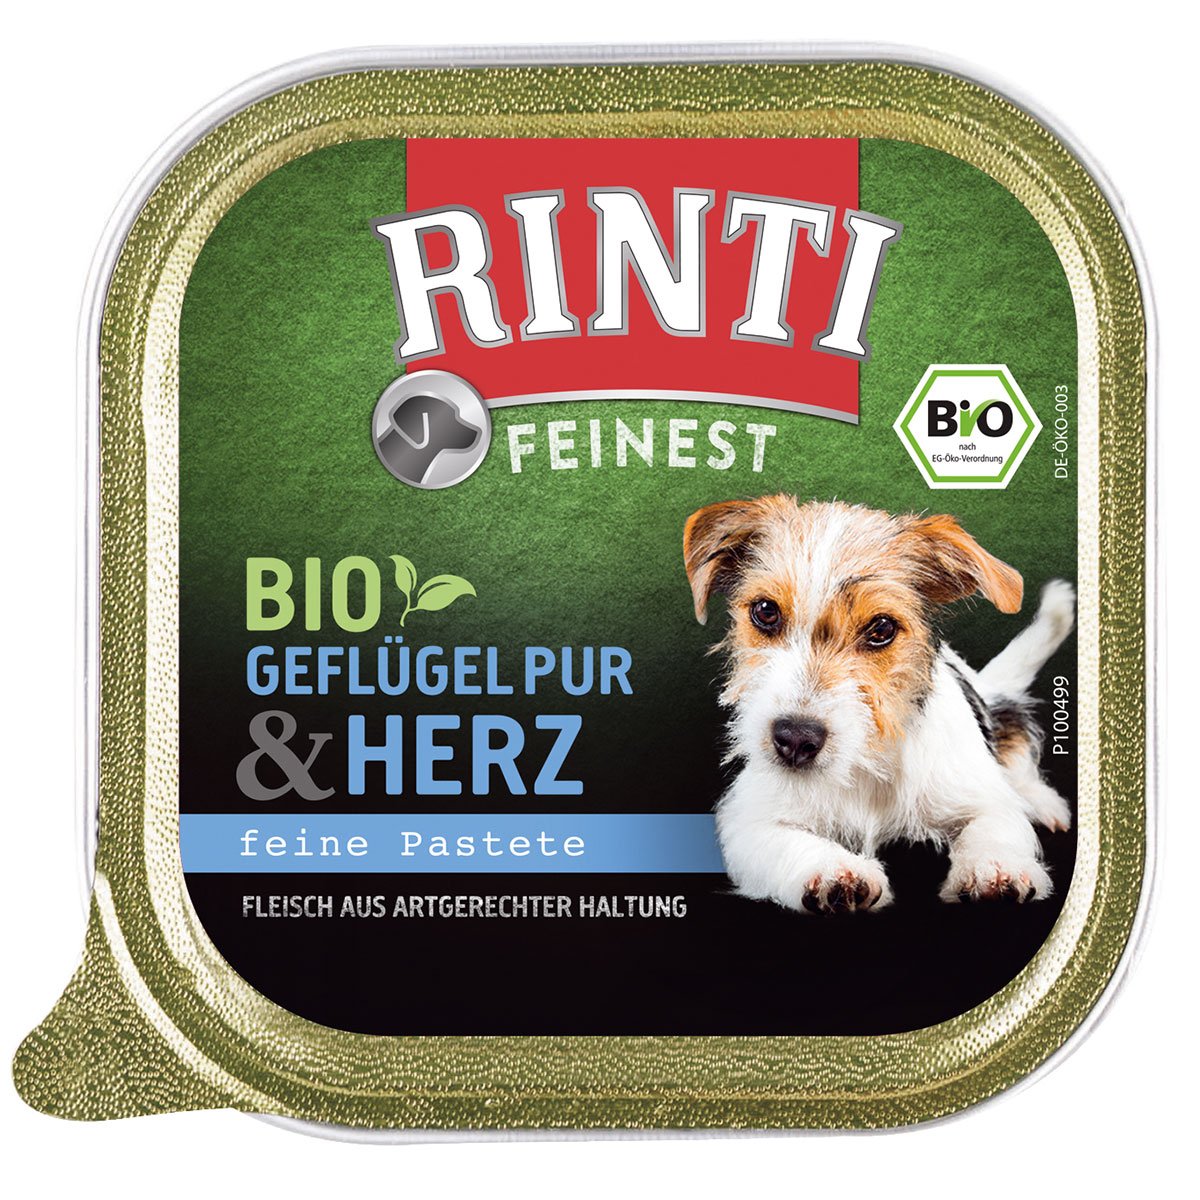 Rinti Feinest Bio Geflügel pur & Herz 22x150g von Rinti